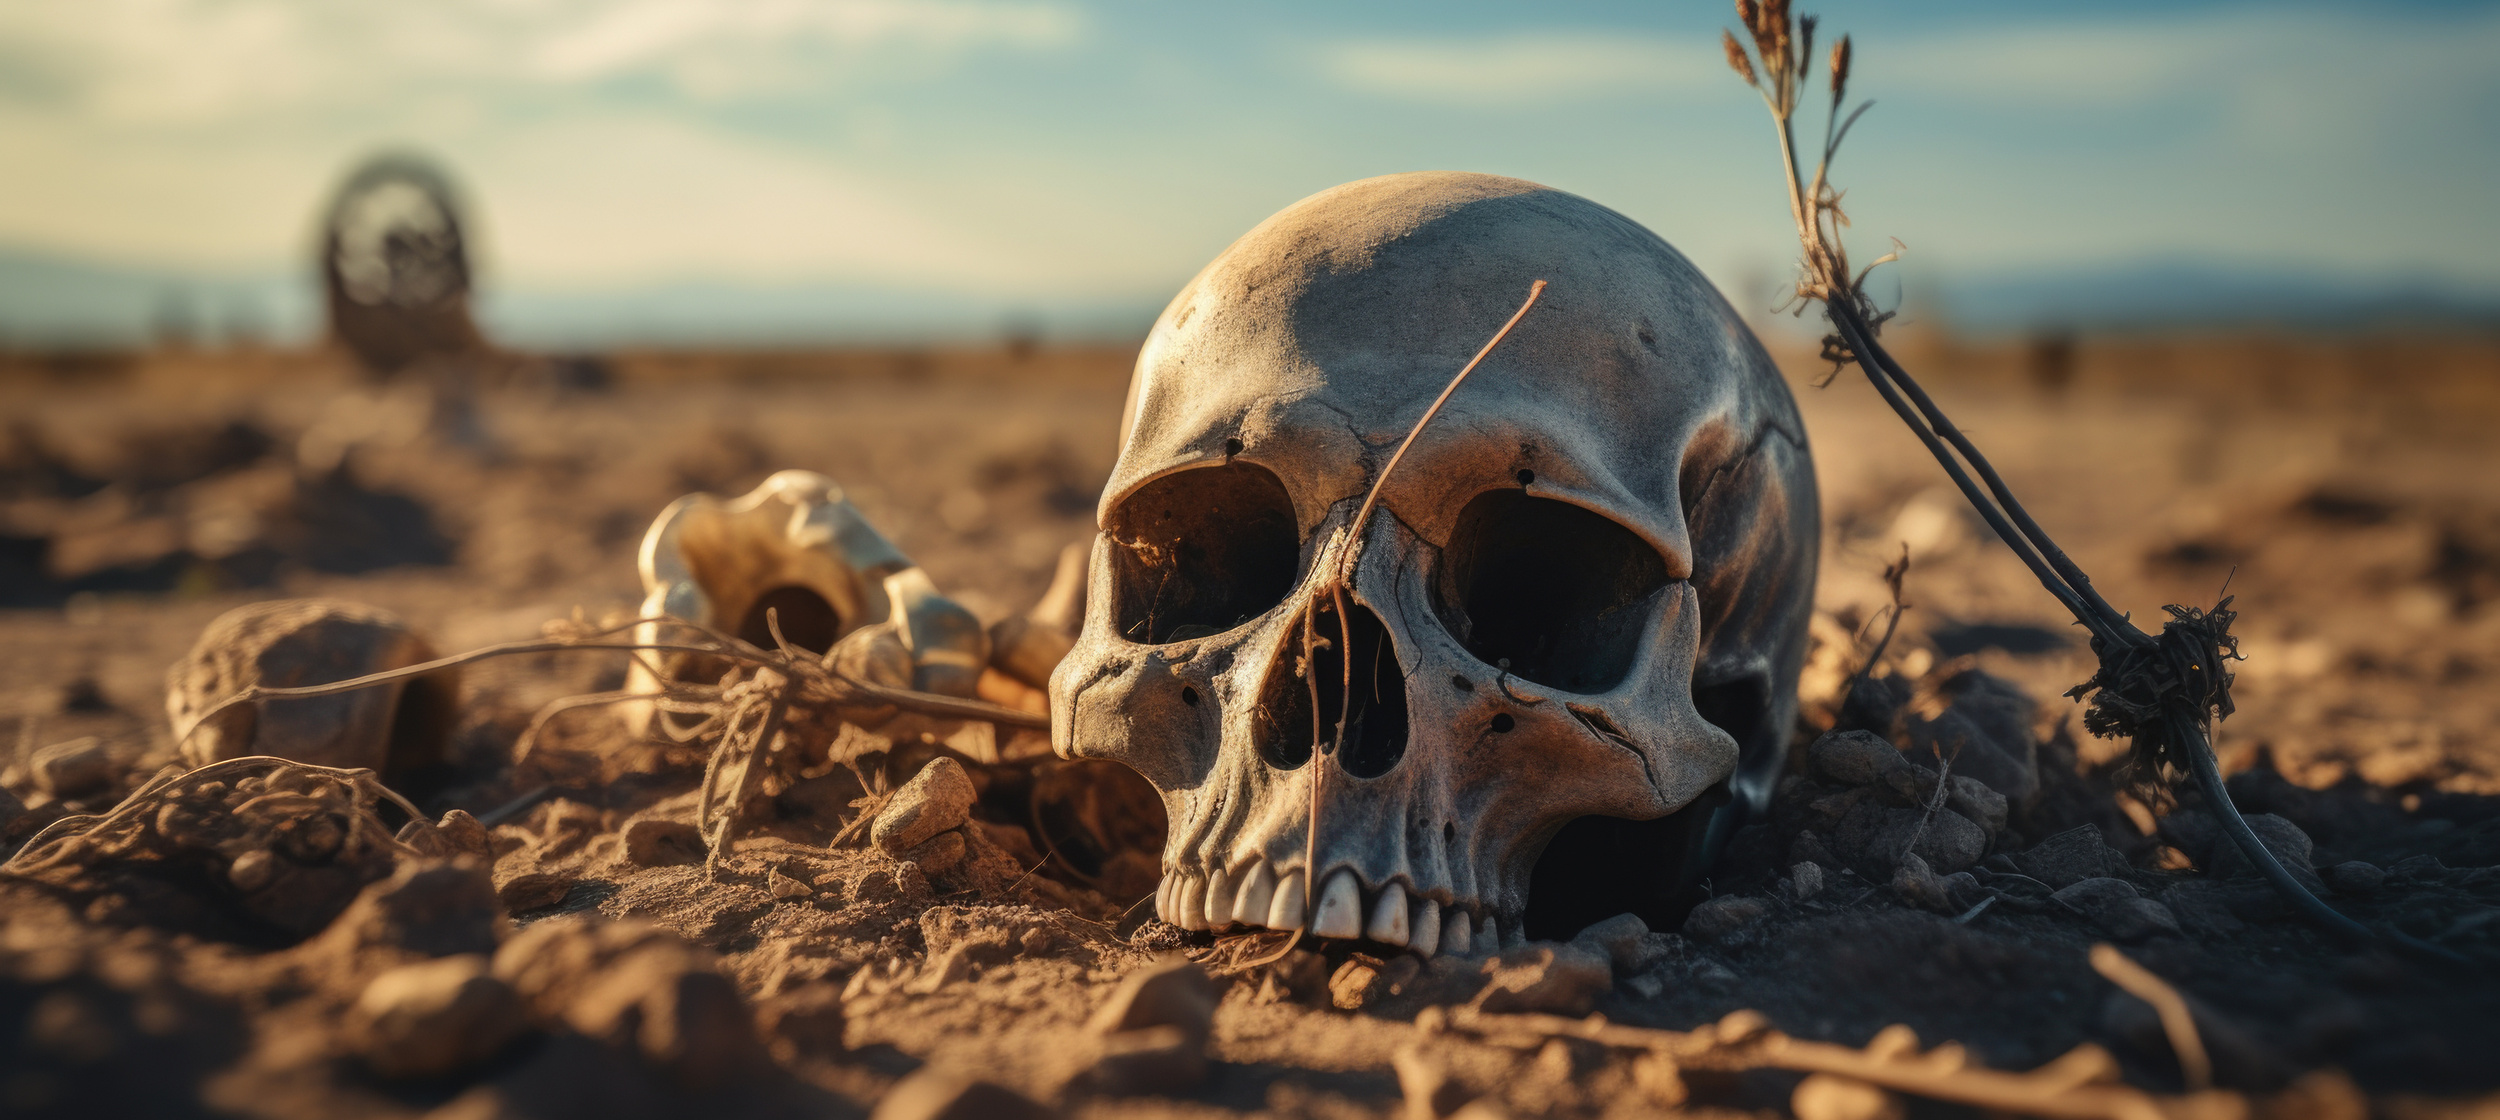 Les sépultures de 67 individus brutalement assassinés ont été retrouvés dans la région de Caral, site archéologique mythique du Pérou. Image générée par IA. © Ruslan Gilmanshin, Adobe Stock